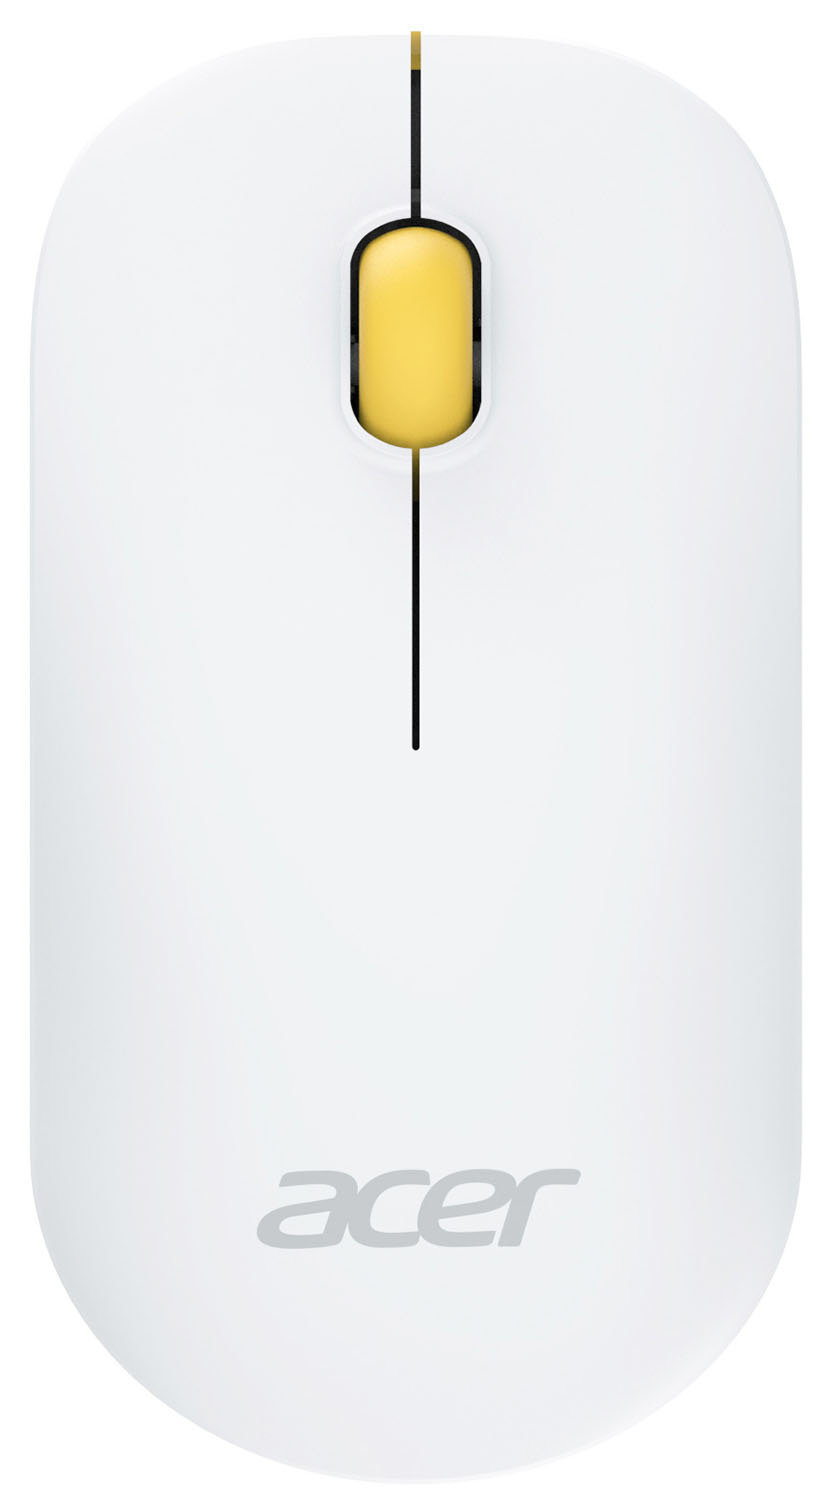 Мышь Acer OMR200, желтый 